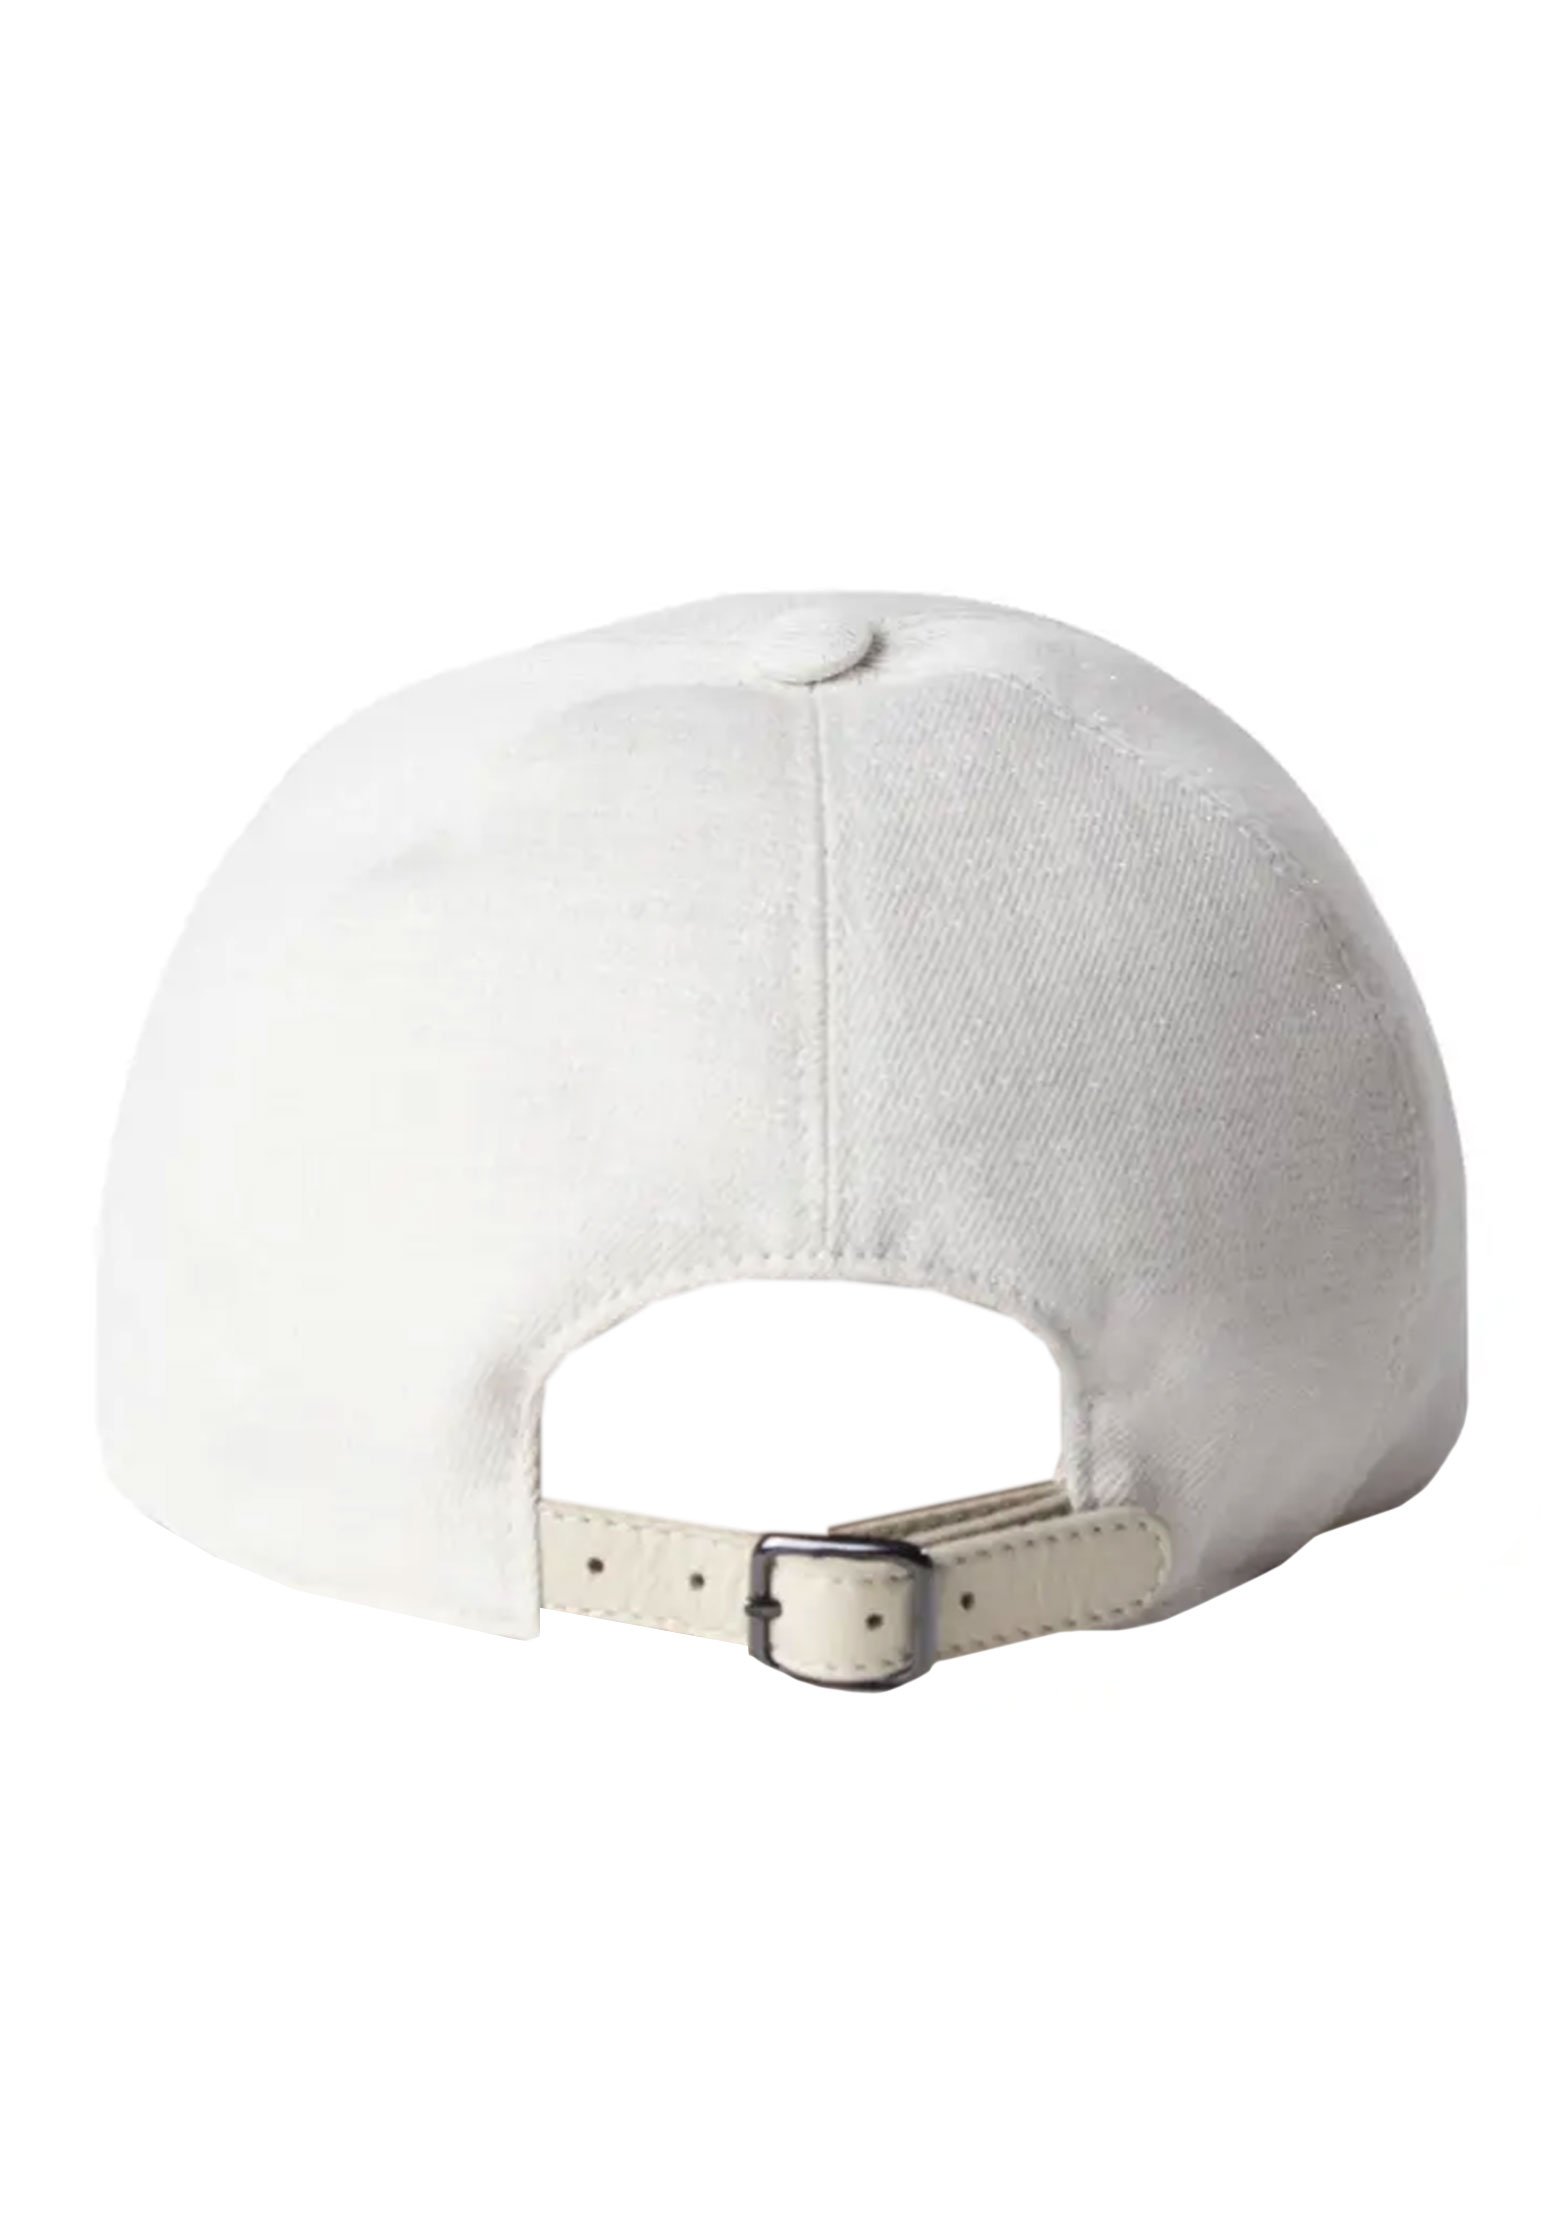 Bonnet BRUNELLO CUCINELLI Color: white (Code: 1561) in online store Allure